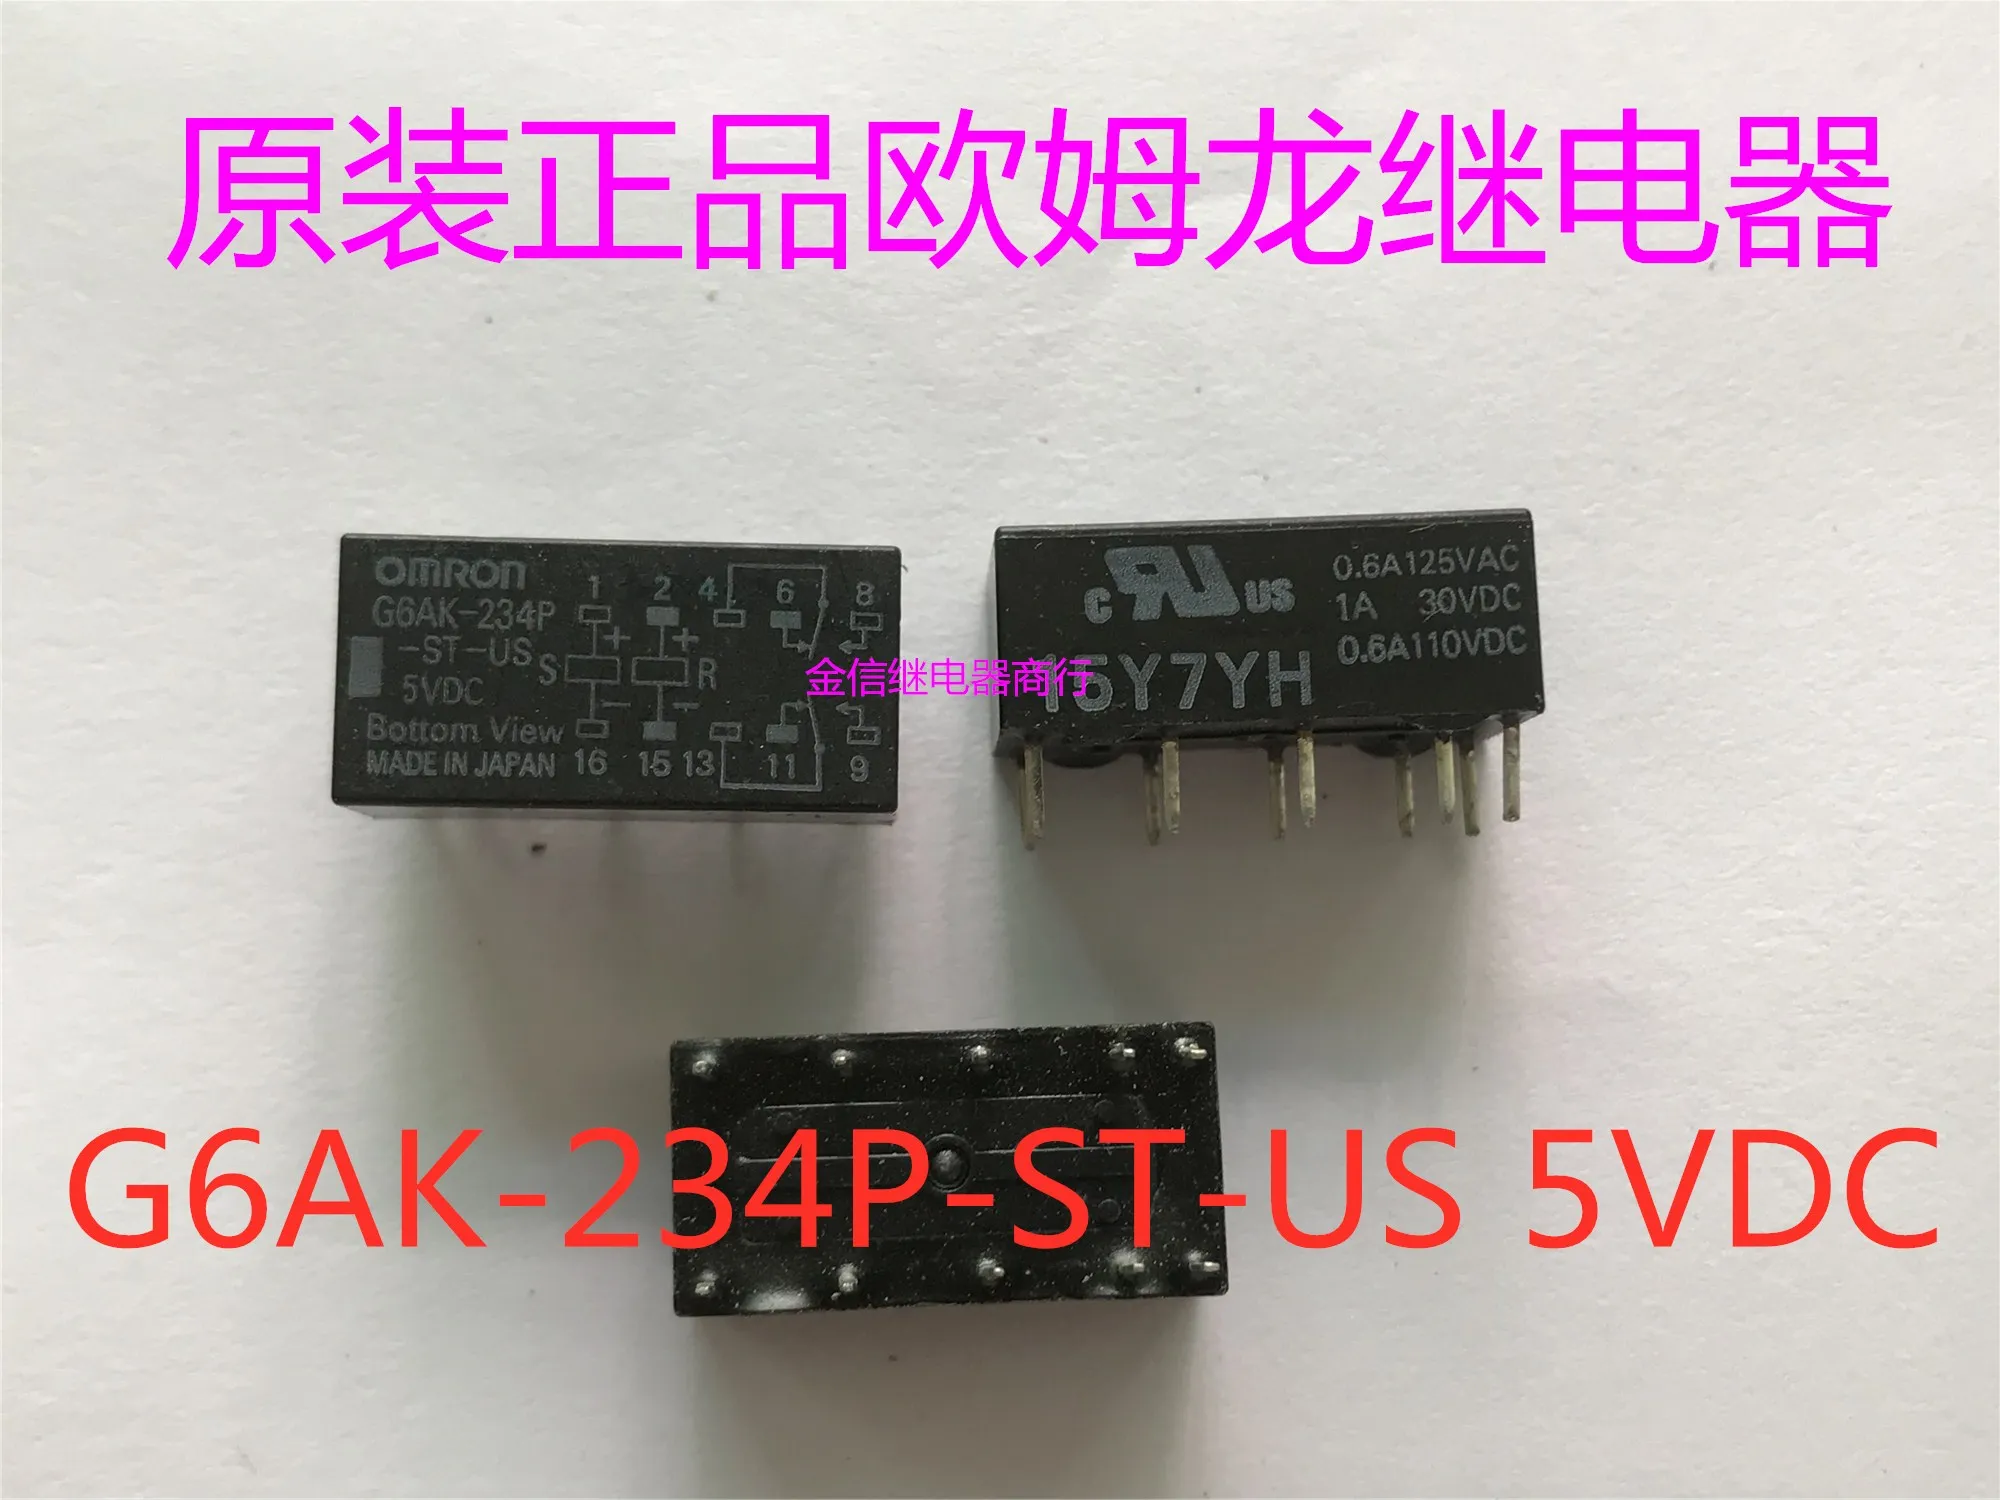 

Free shipping G6AK-234P-ST-US 5VDC 10PCS As shown